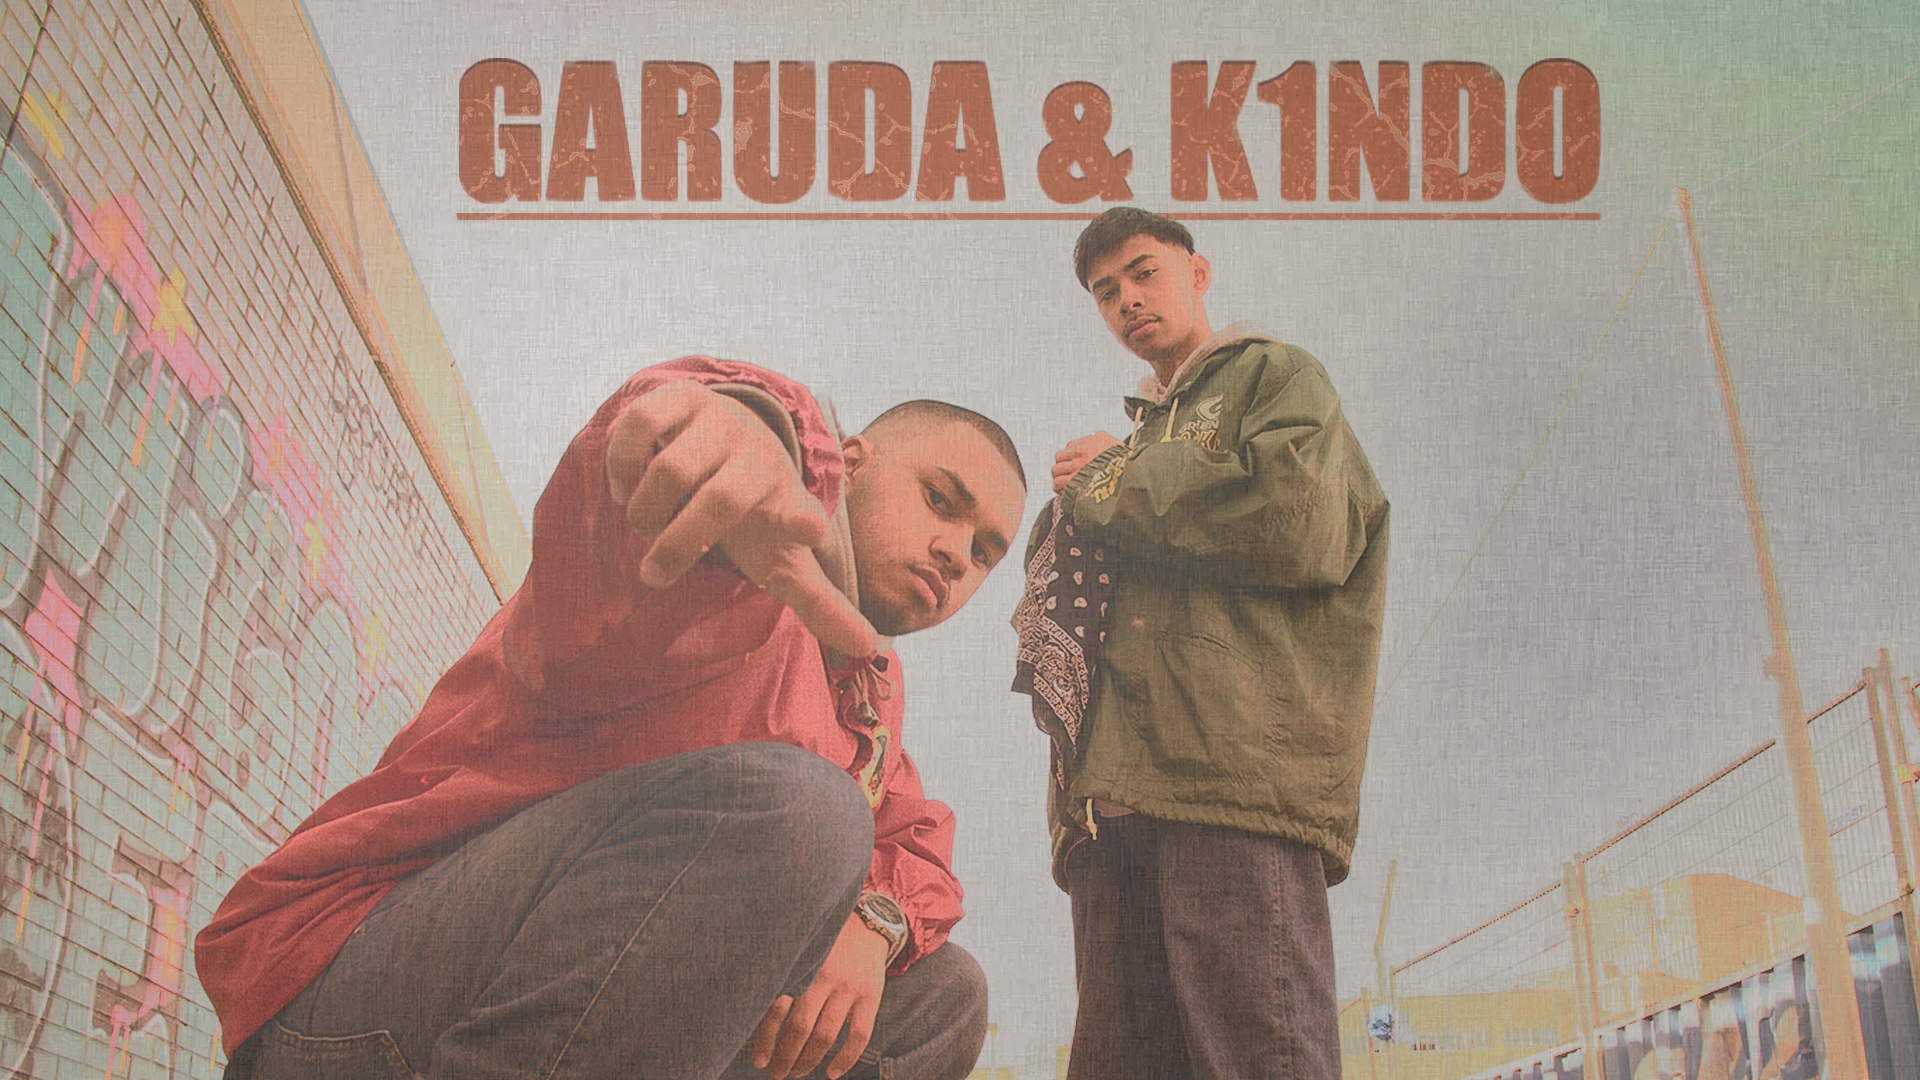 Garuda & K1ndo